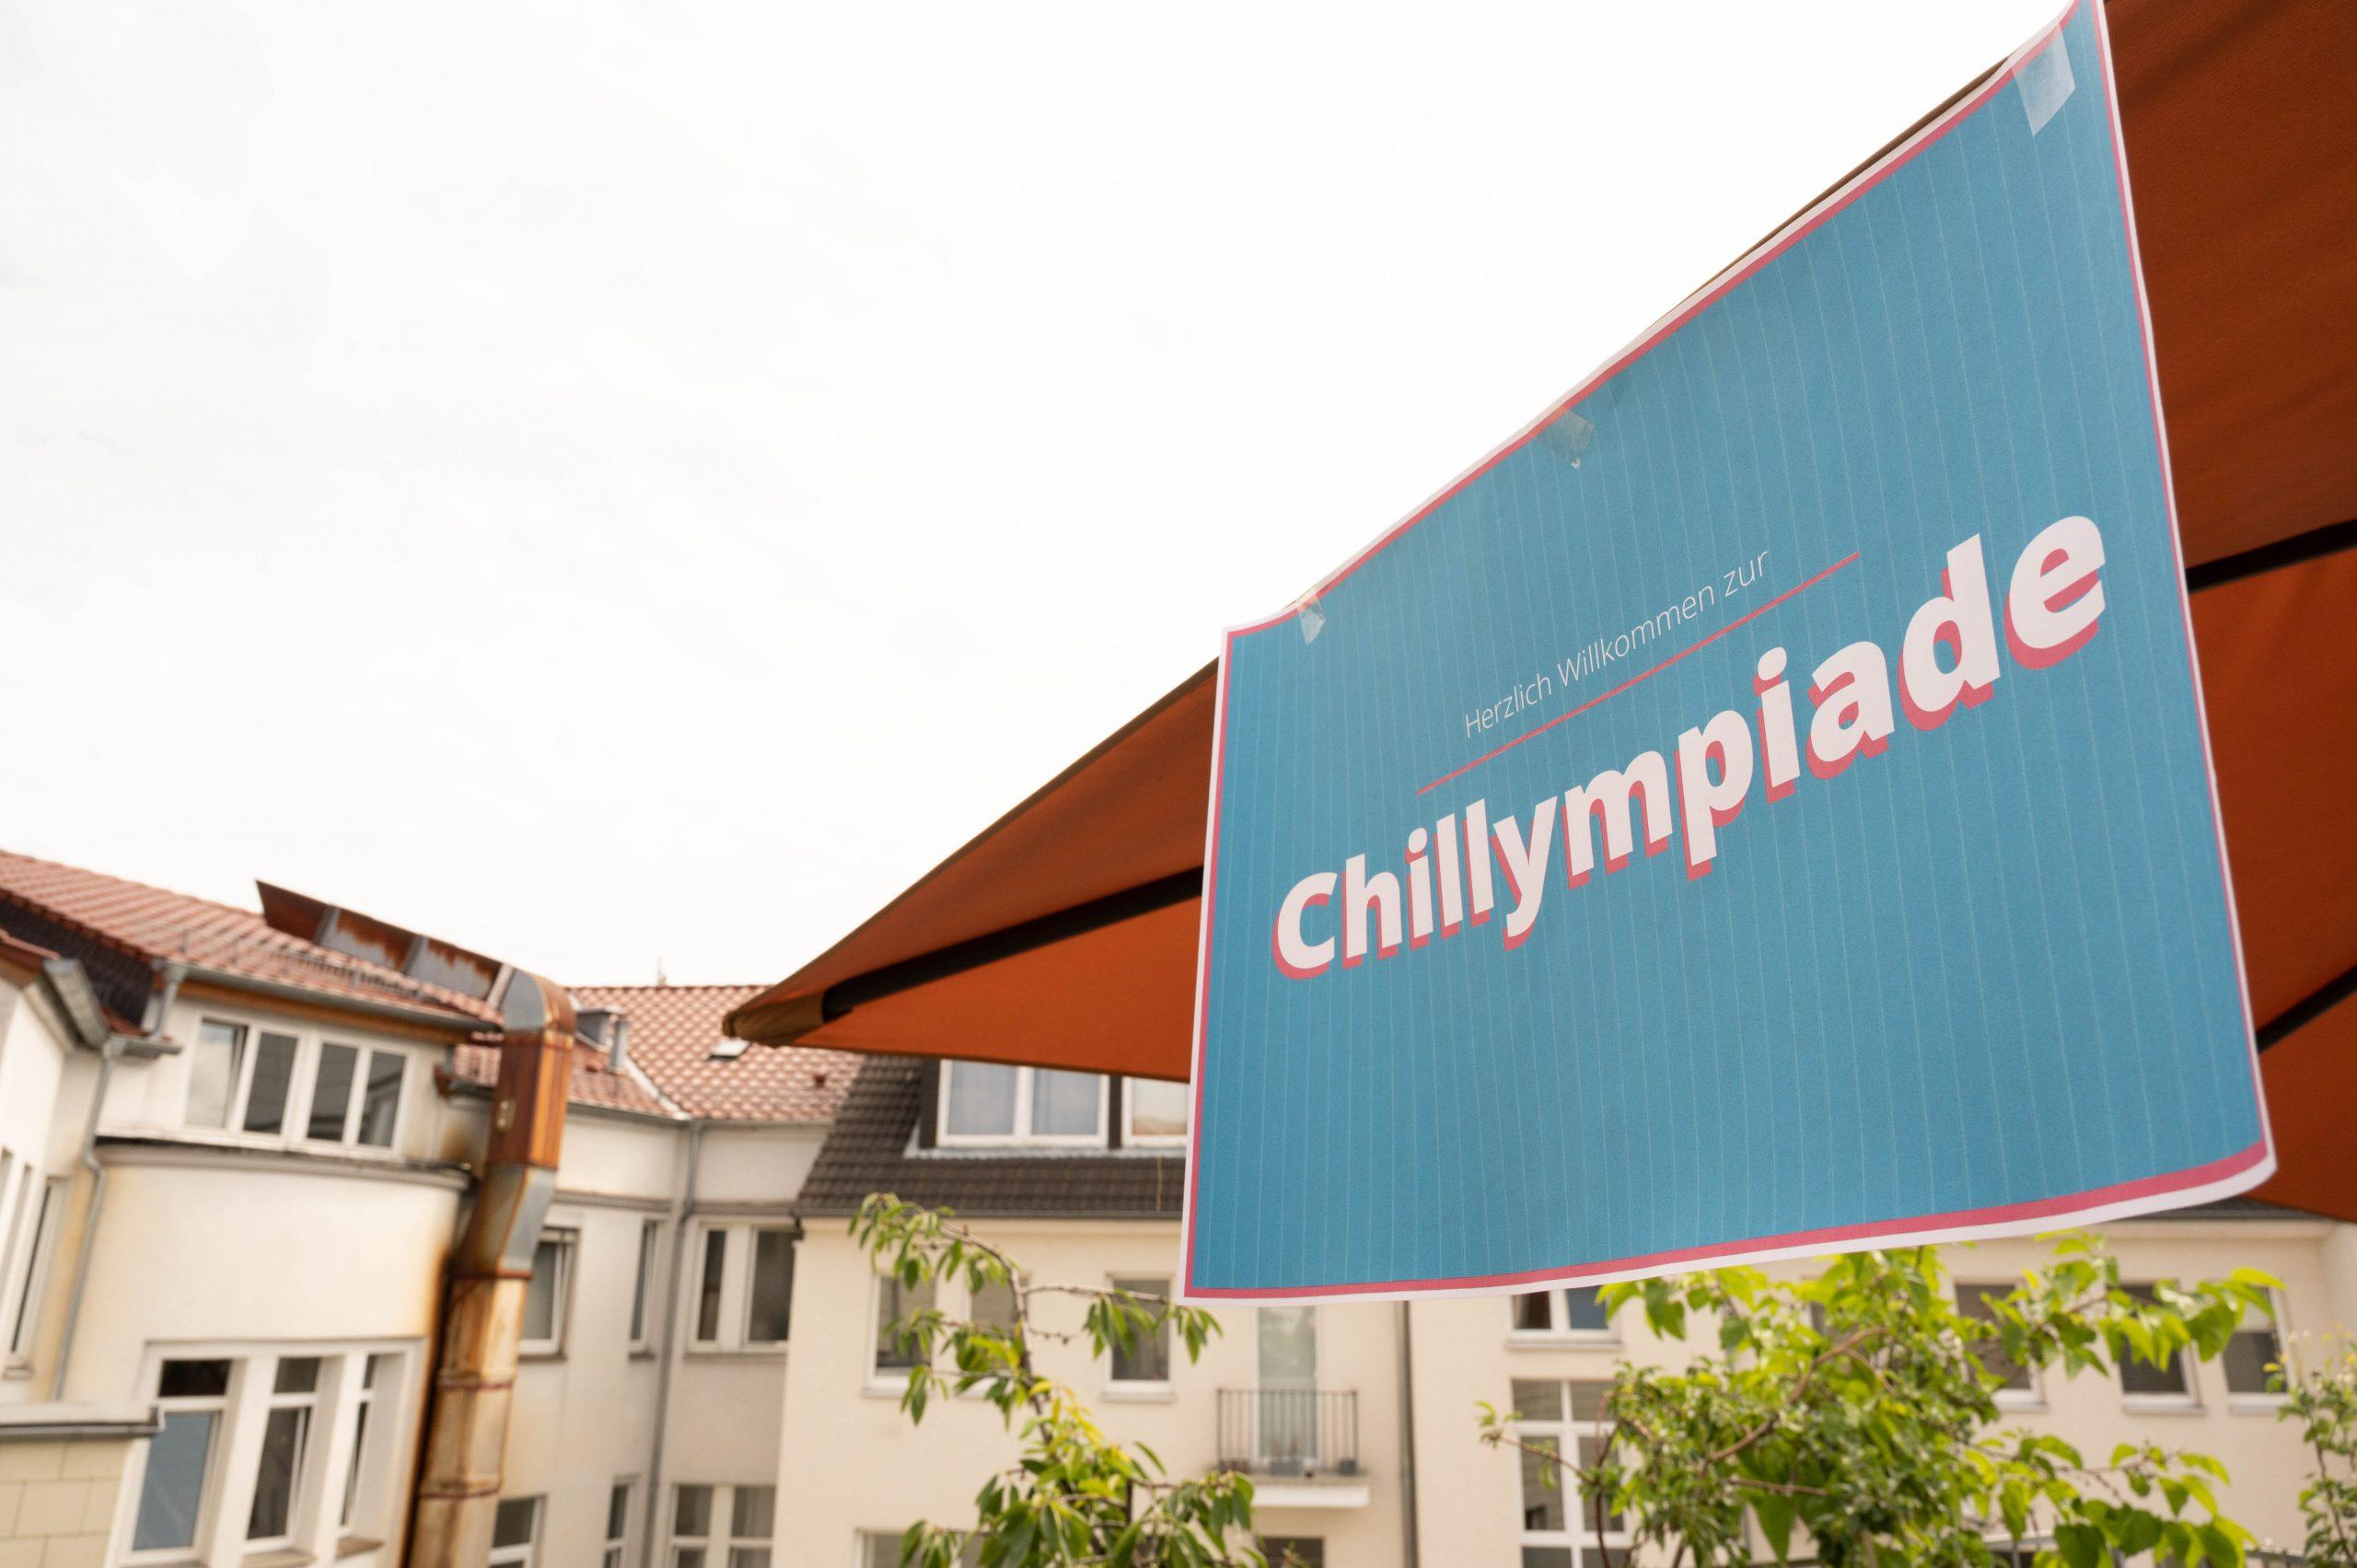 Ein Schild für die Chillympiade